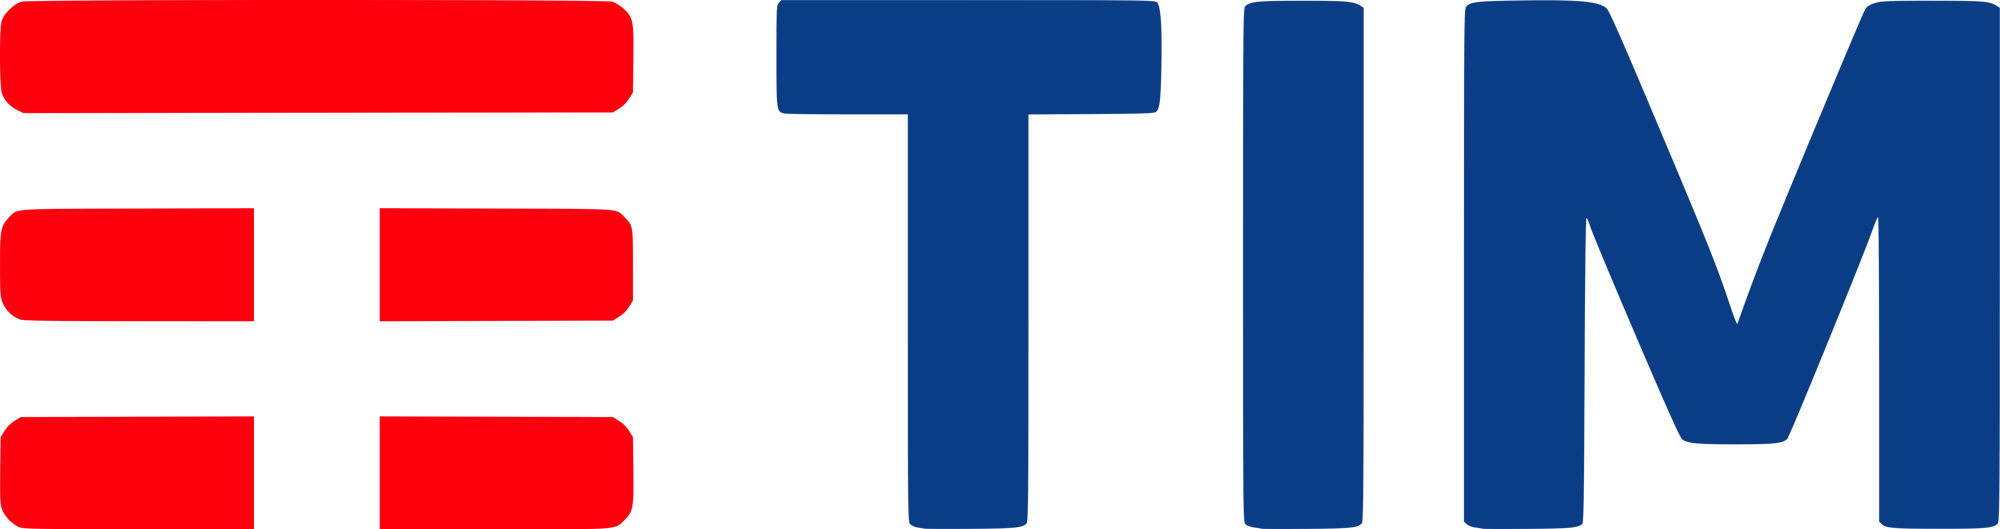 tim-logo-2-1